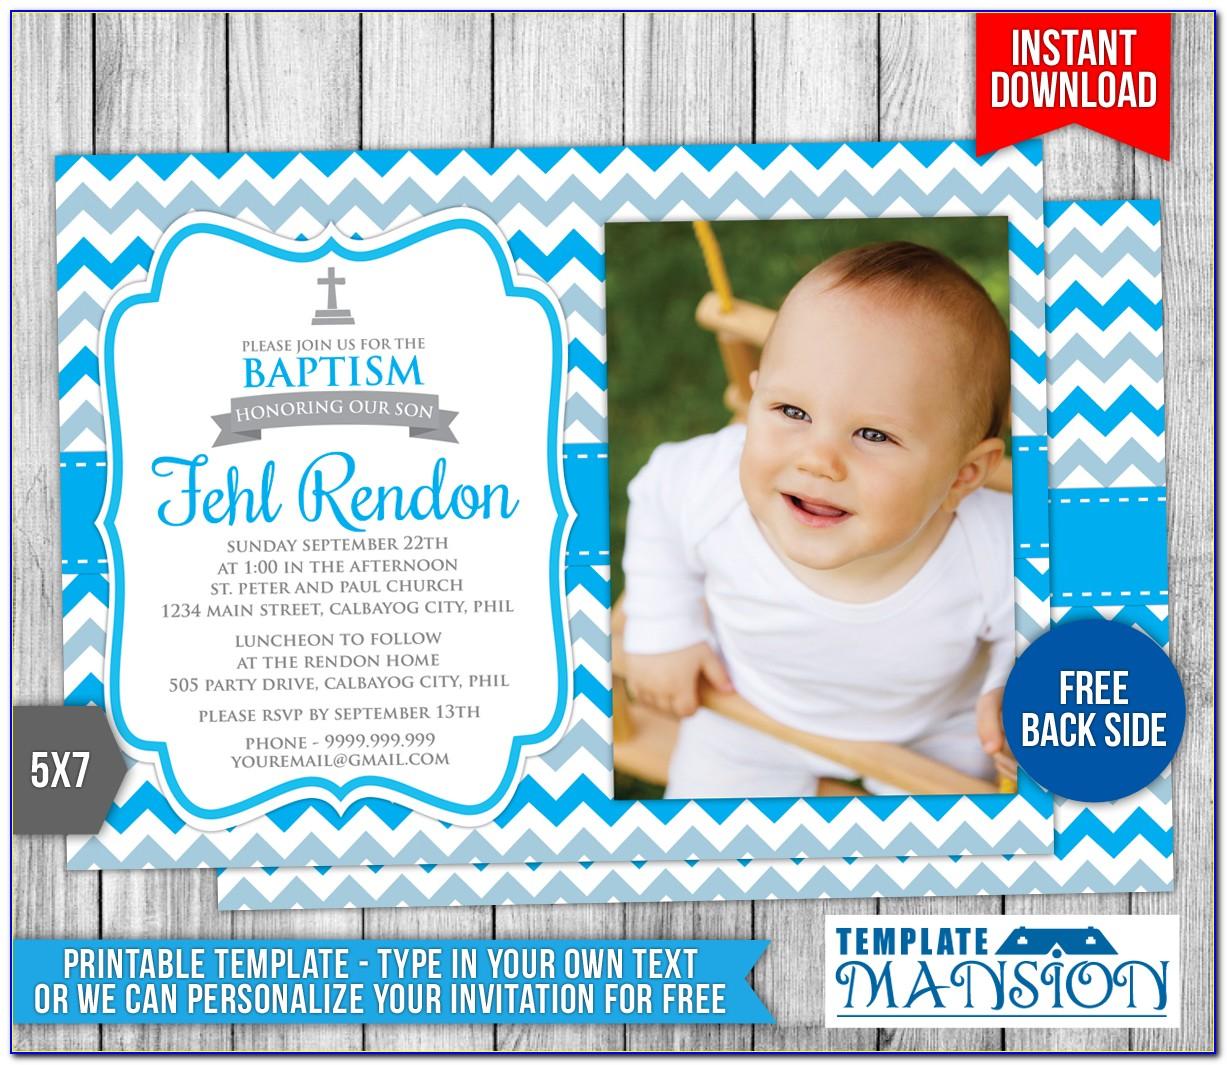 Baptism Cards Templates